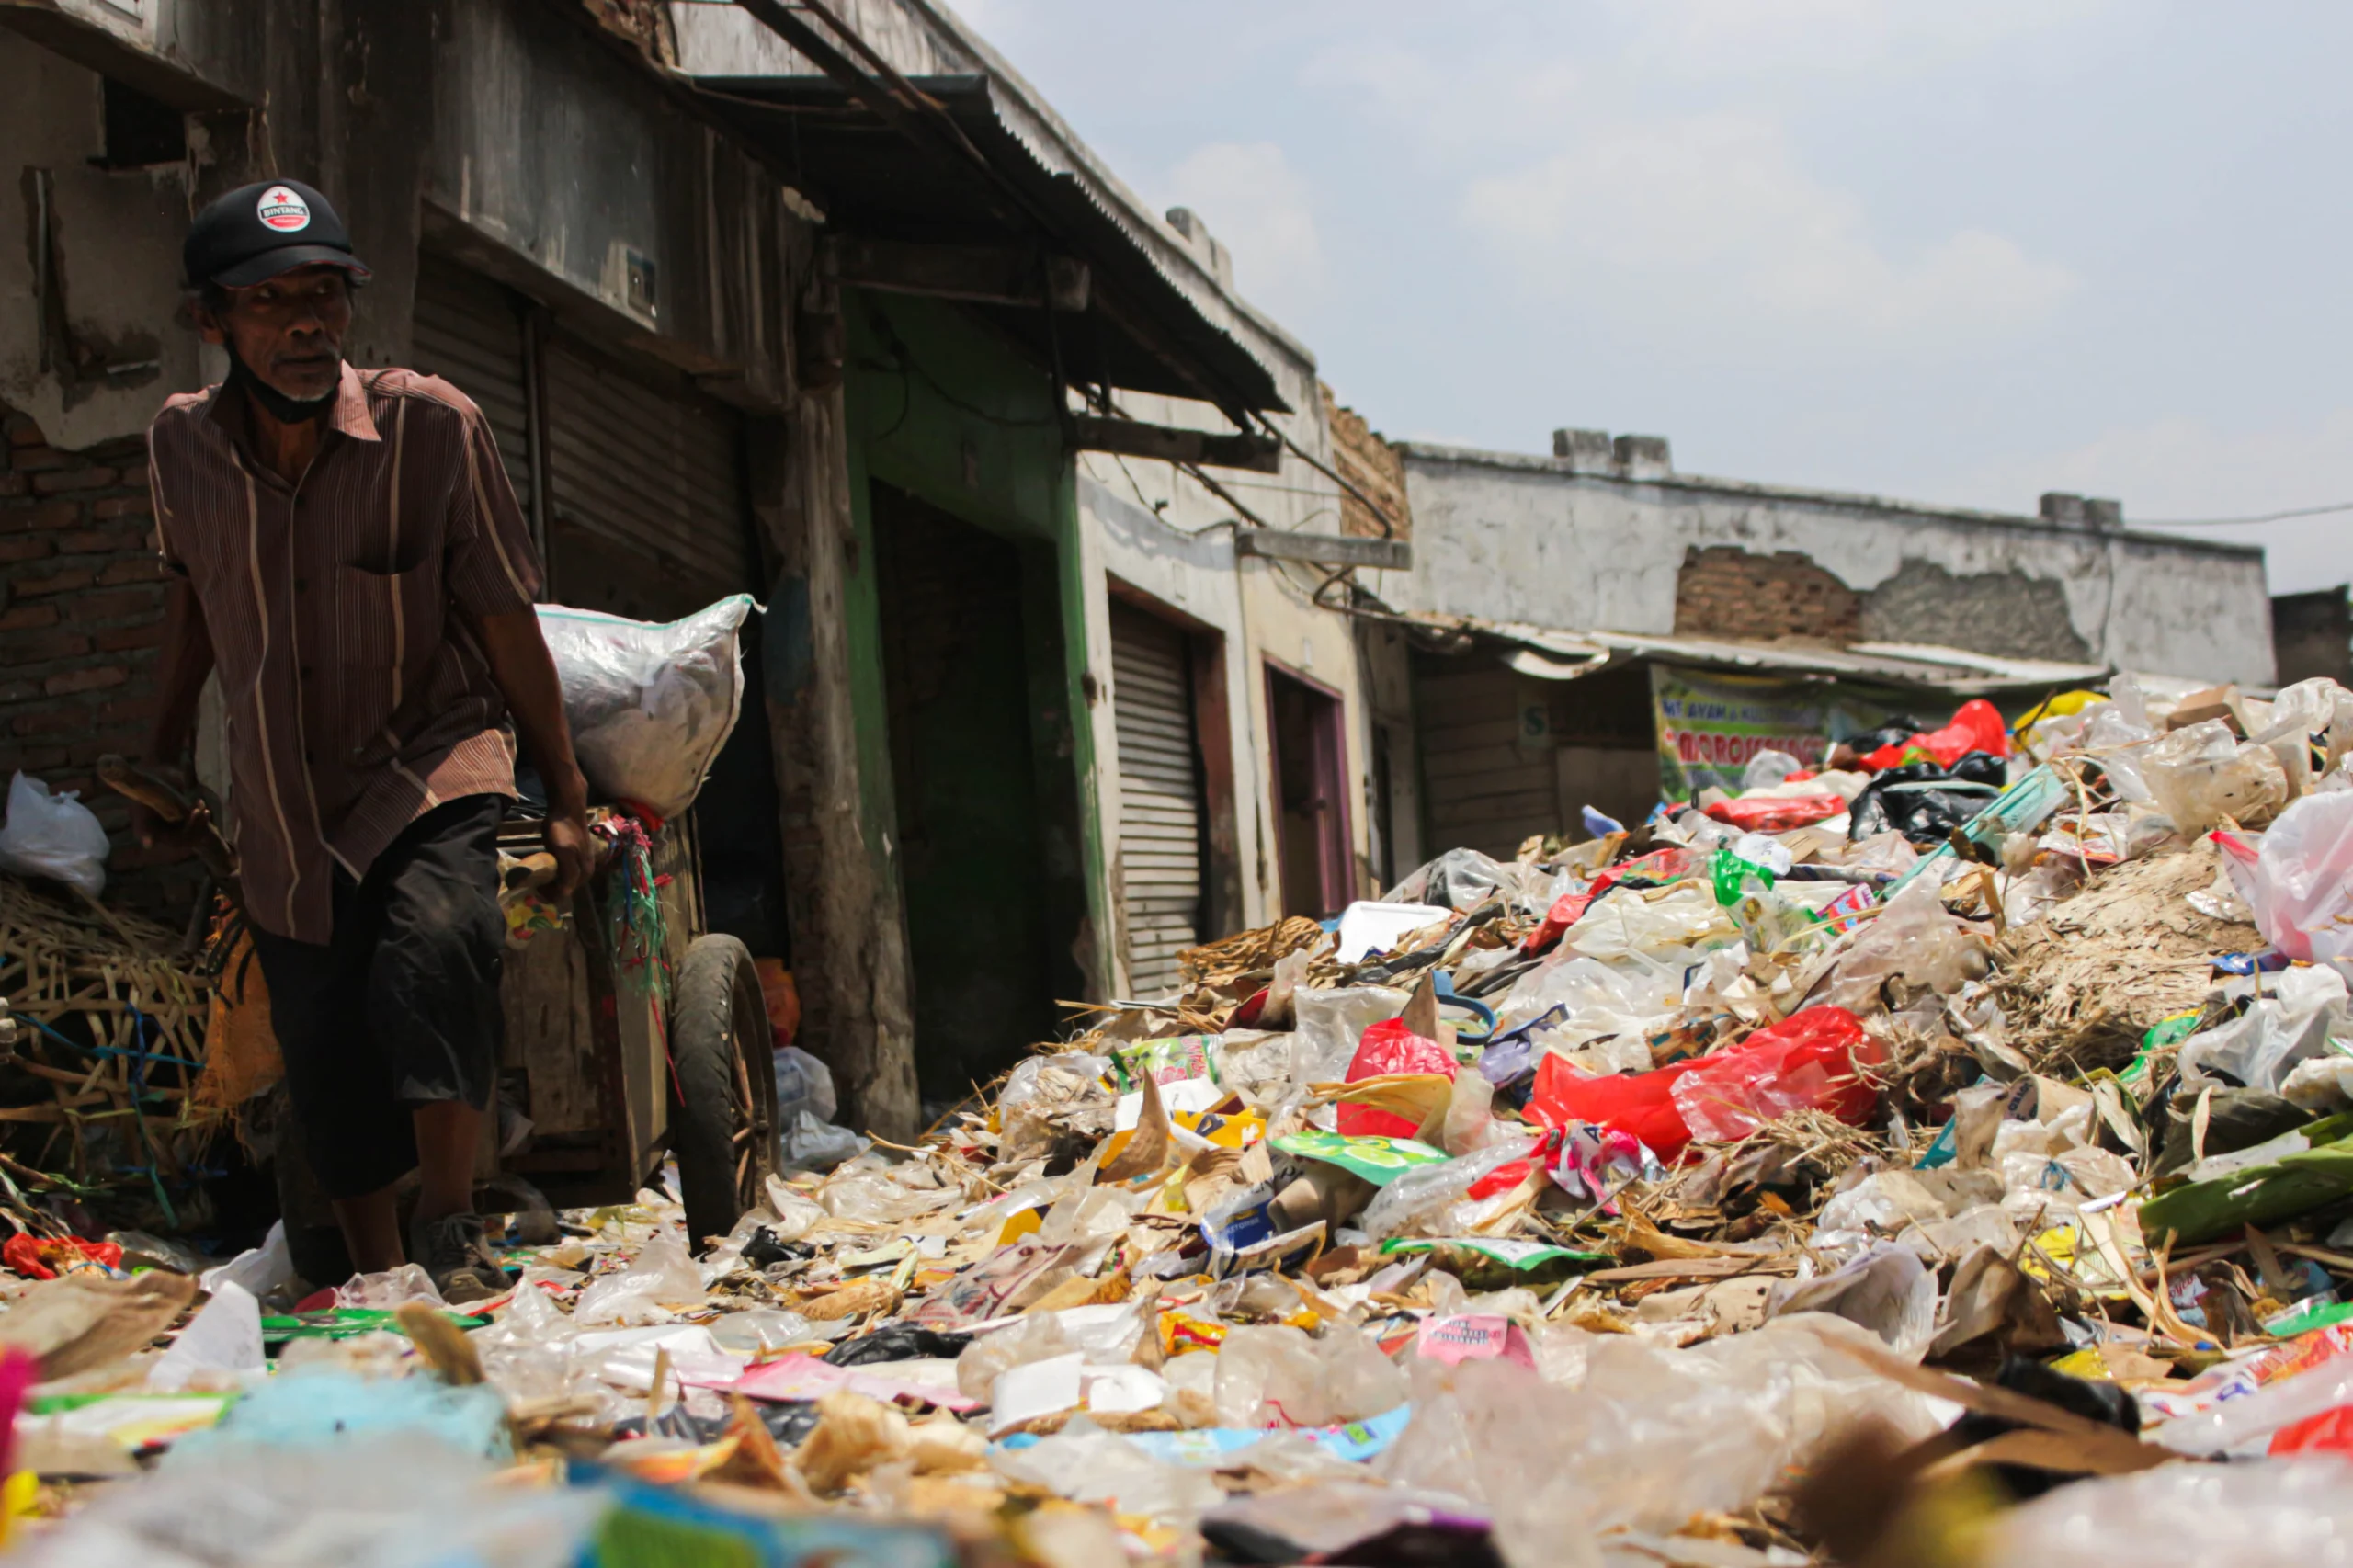 Kondisi sampah yang menggunung di Pasar Sehat Cileunyi (PSC).